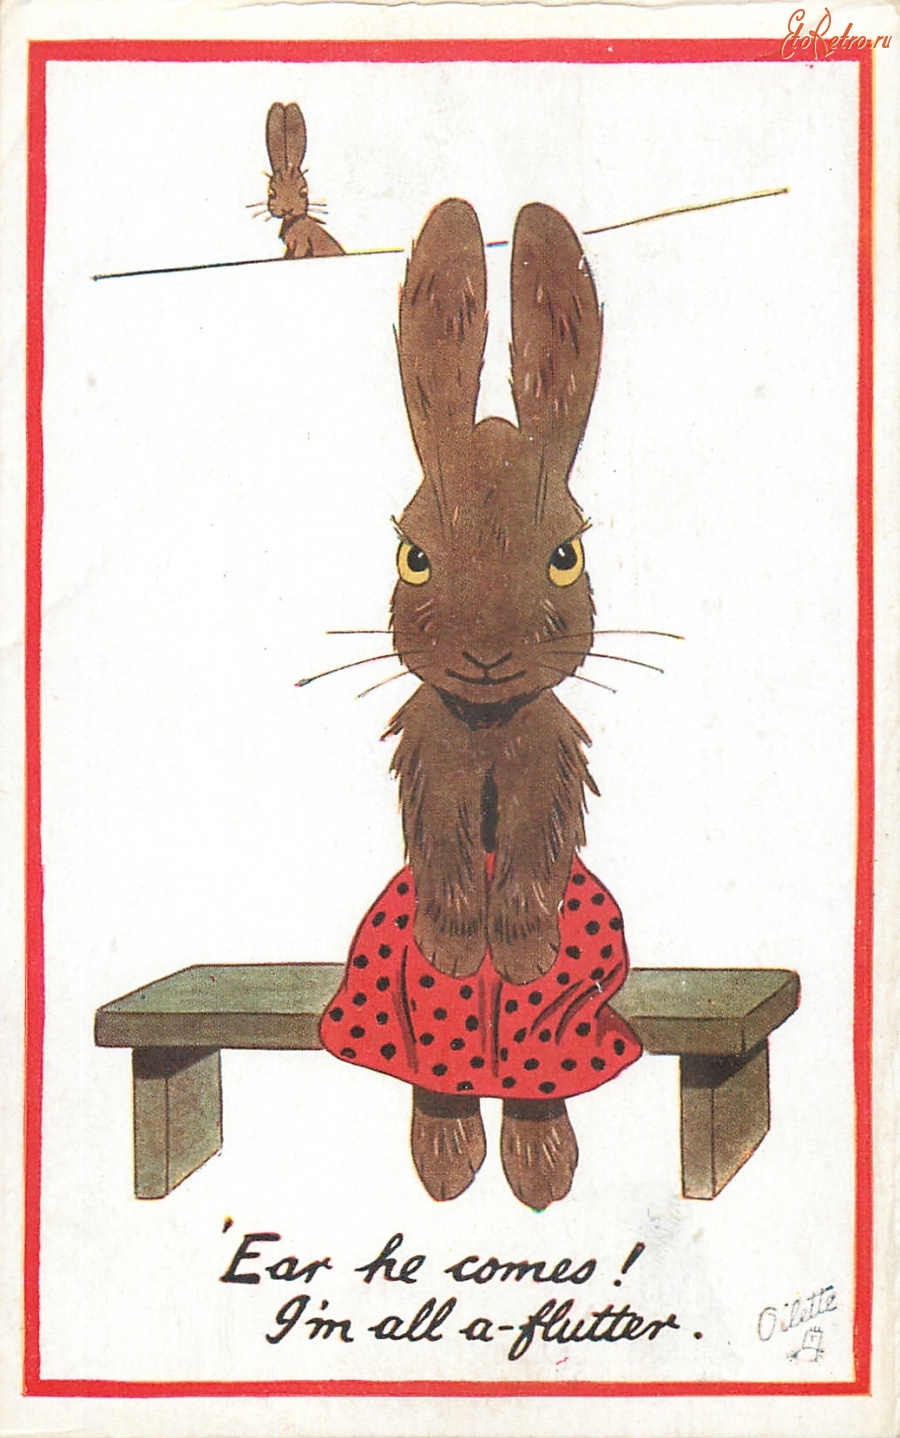 Ретро открытки - Маленькая любовь кролика